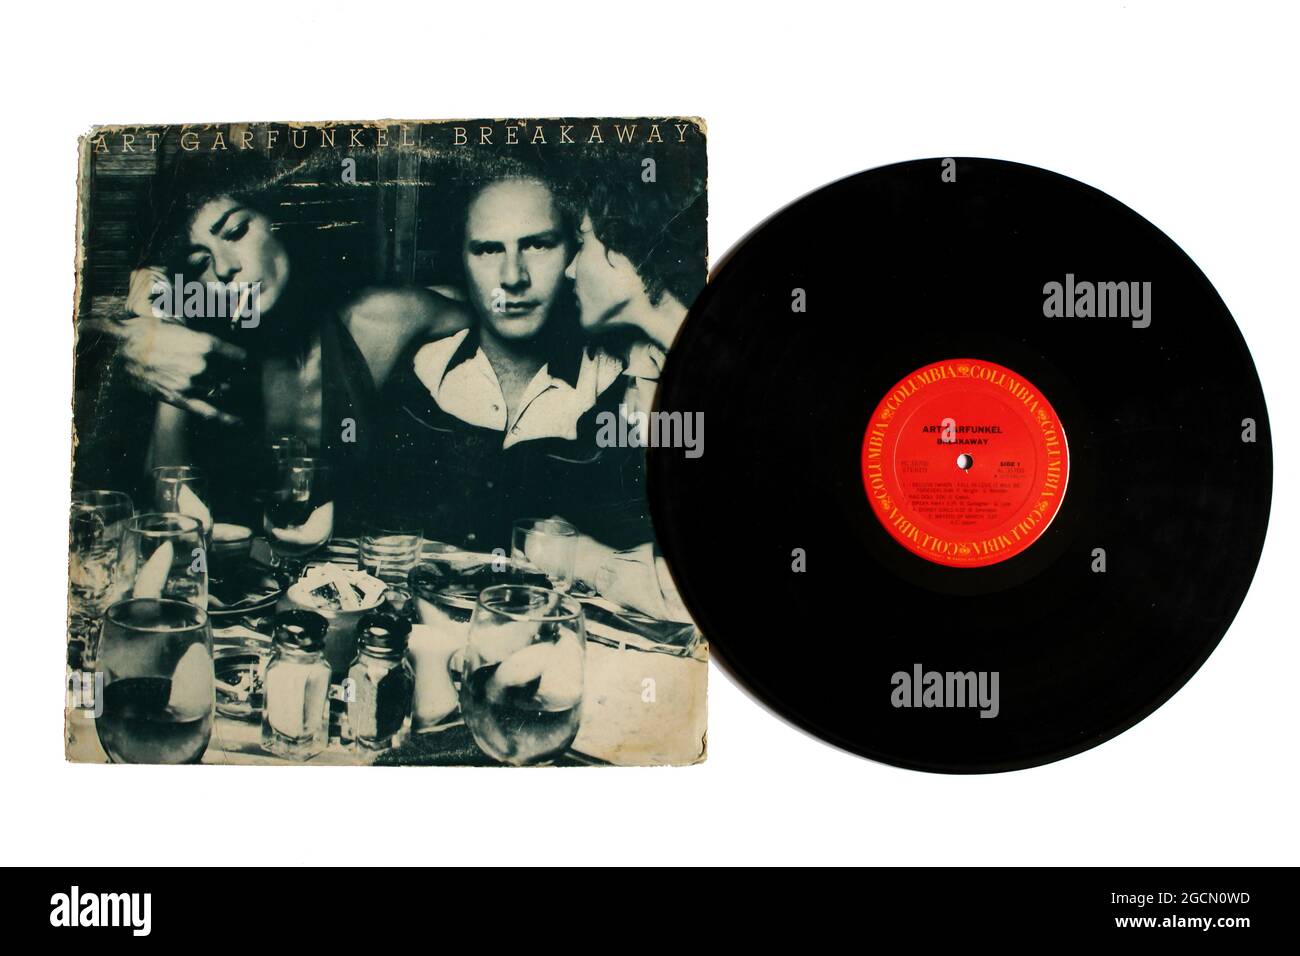 Músico de folk, rock y pop Art Garfunkel álbum de música en disco LP de vinilo. Título: Breakaway álbum de portada, break away Foto de stock